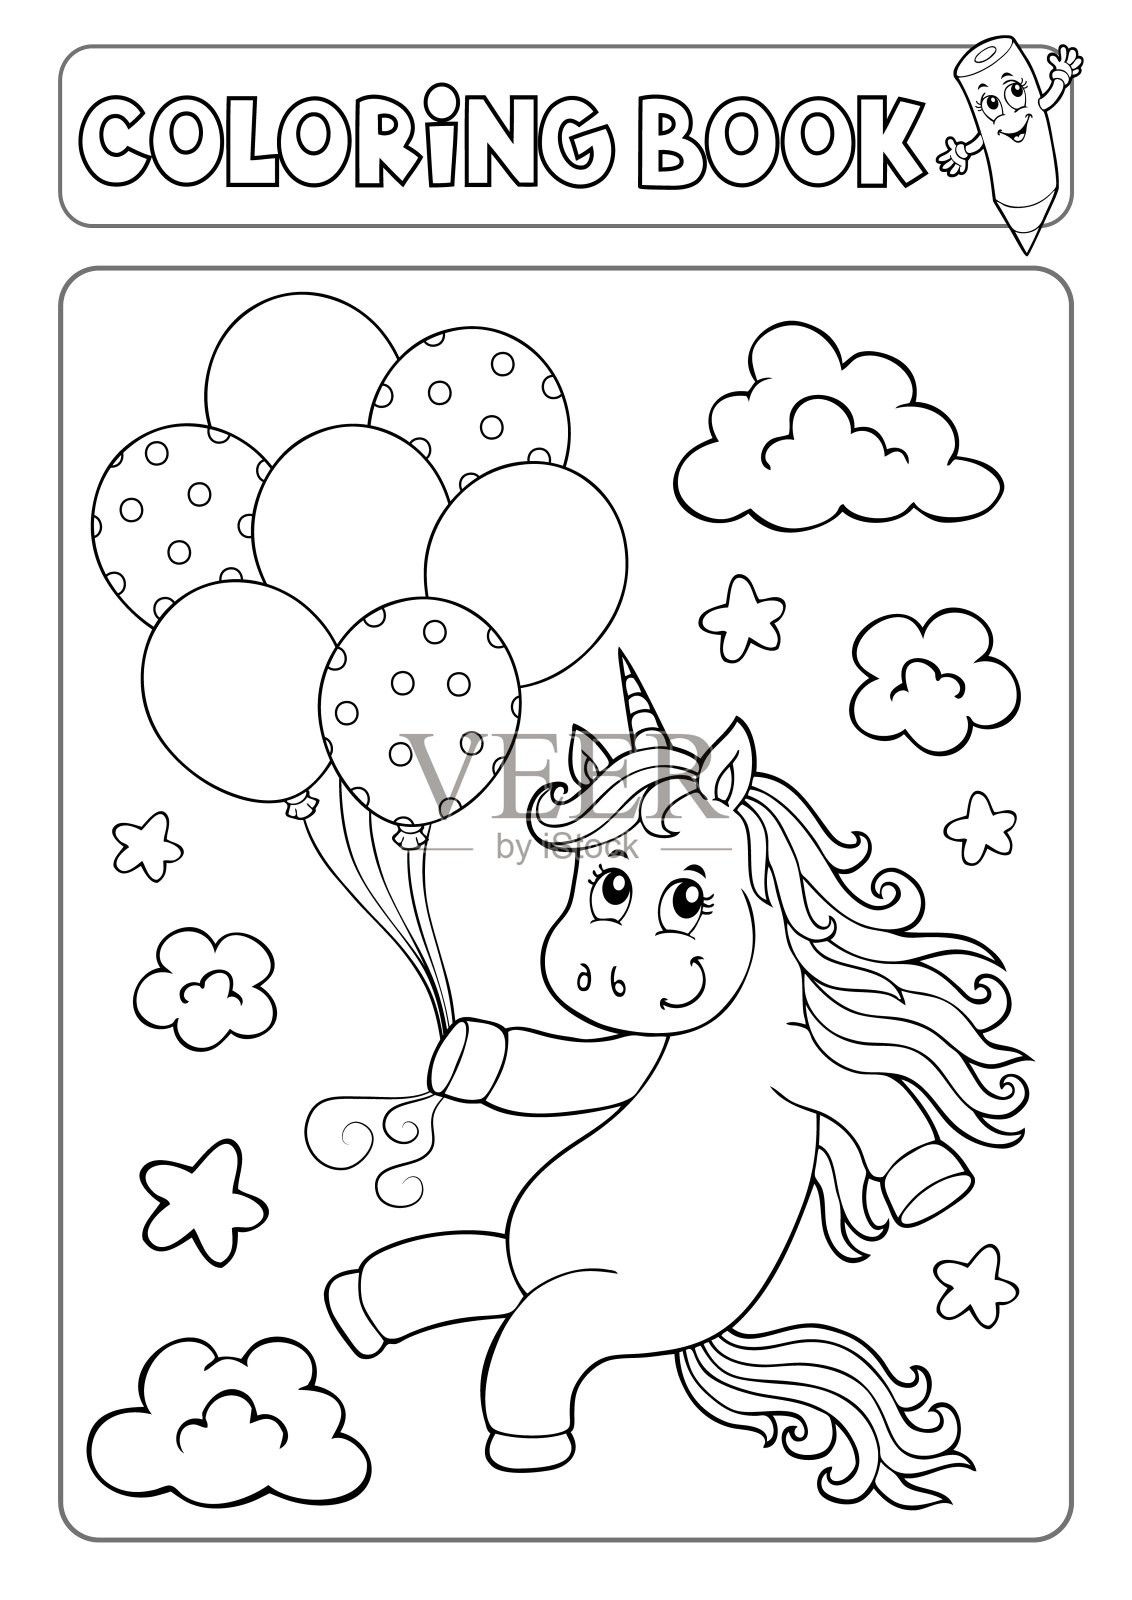 用气球给书中的独角兽着色插画图片素材